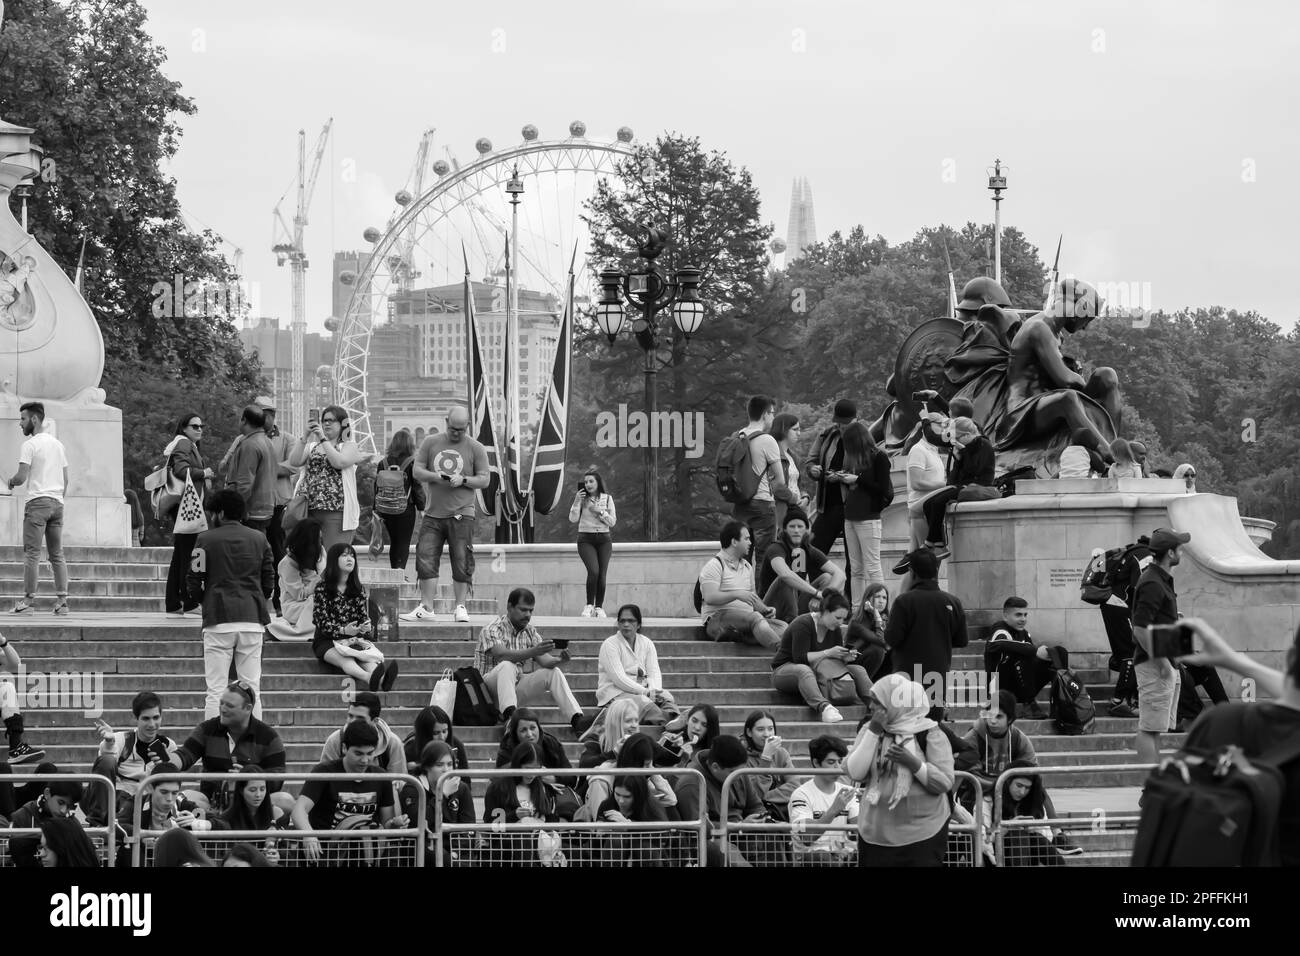 Londres, Royaume-Uni - 23 mai 2018 : vue des touristes au Mémorial de la Reine Victoria et au London Eye en arrière-plan en noir et blanc Banque D'Images